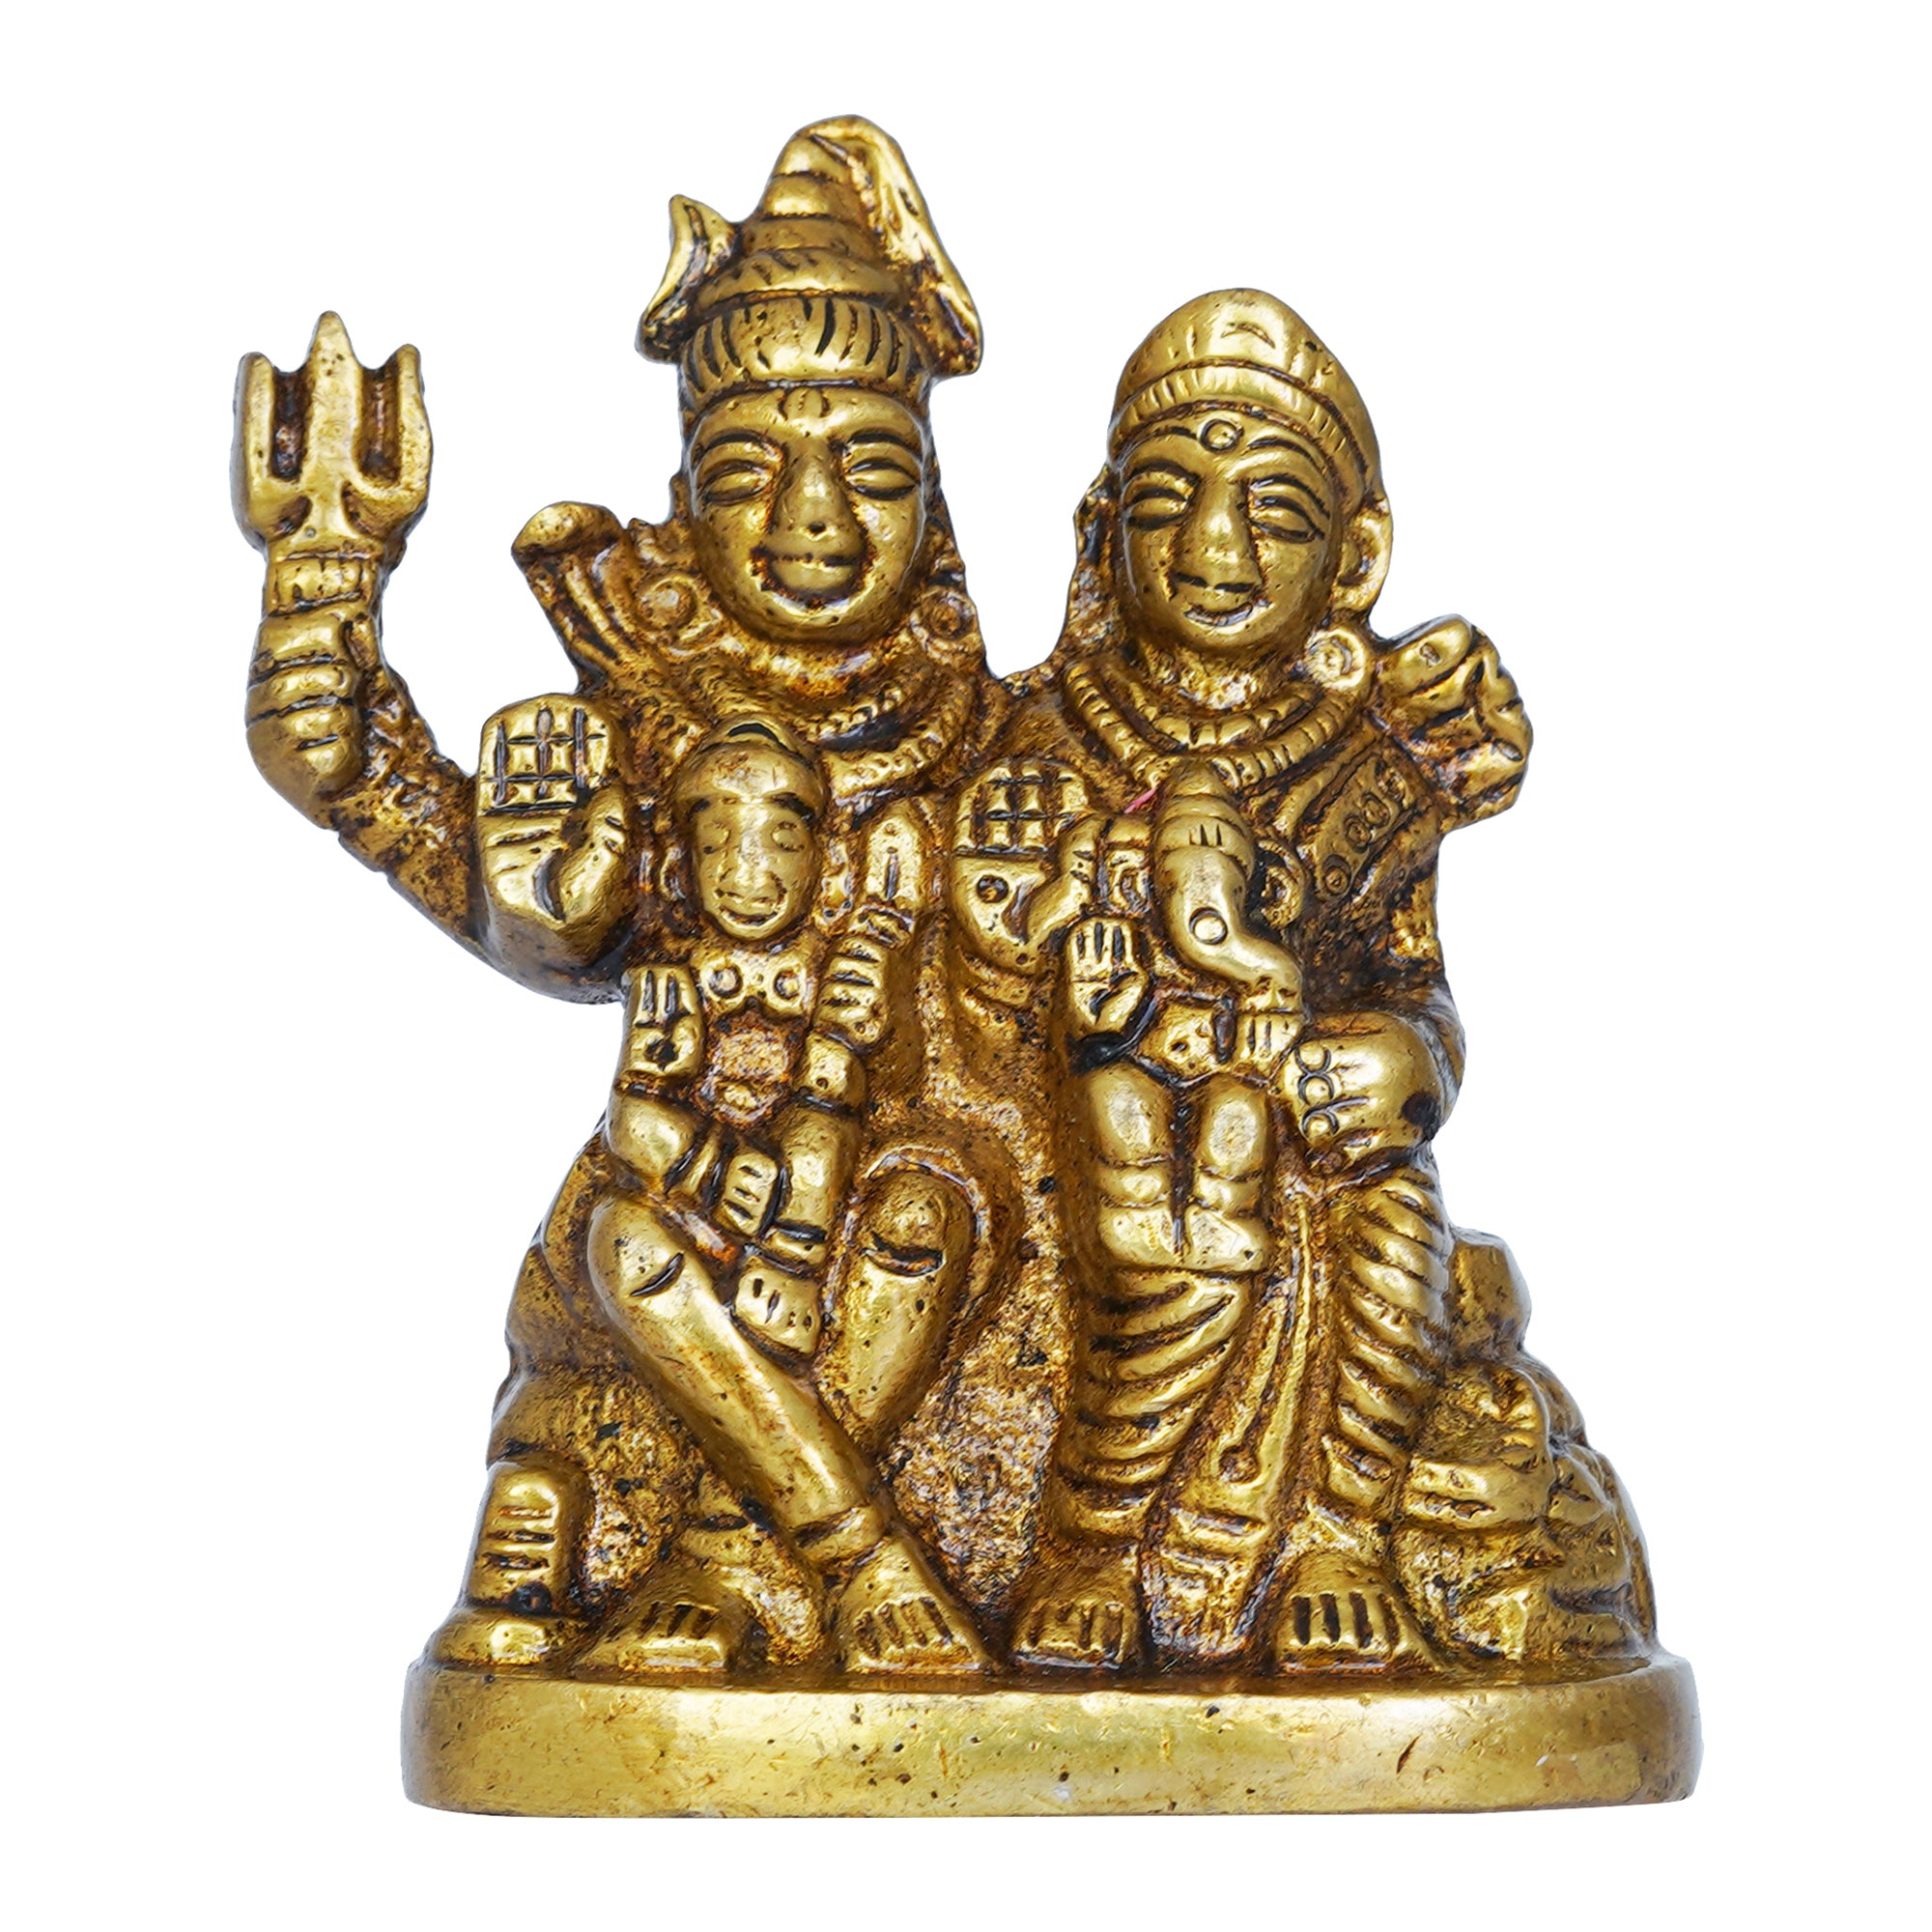 Golden Brass Shiv Parivar Murti Idol - Lord Shiva, Parvati, Ganesha, Kartikeya Statue for Home Temple, Car Dashboard 2